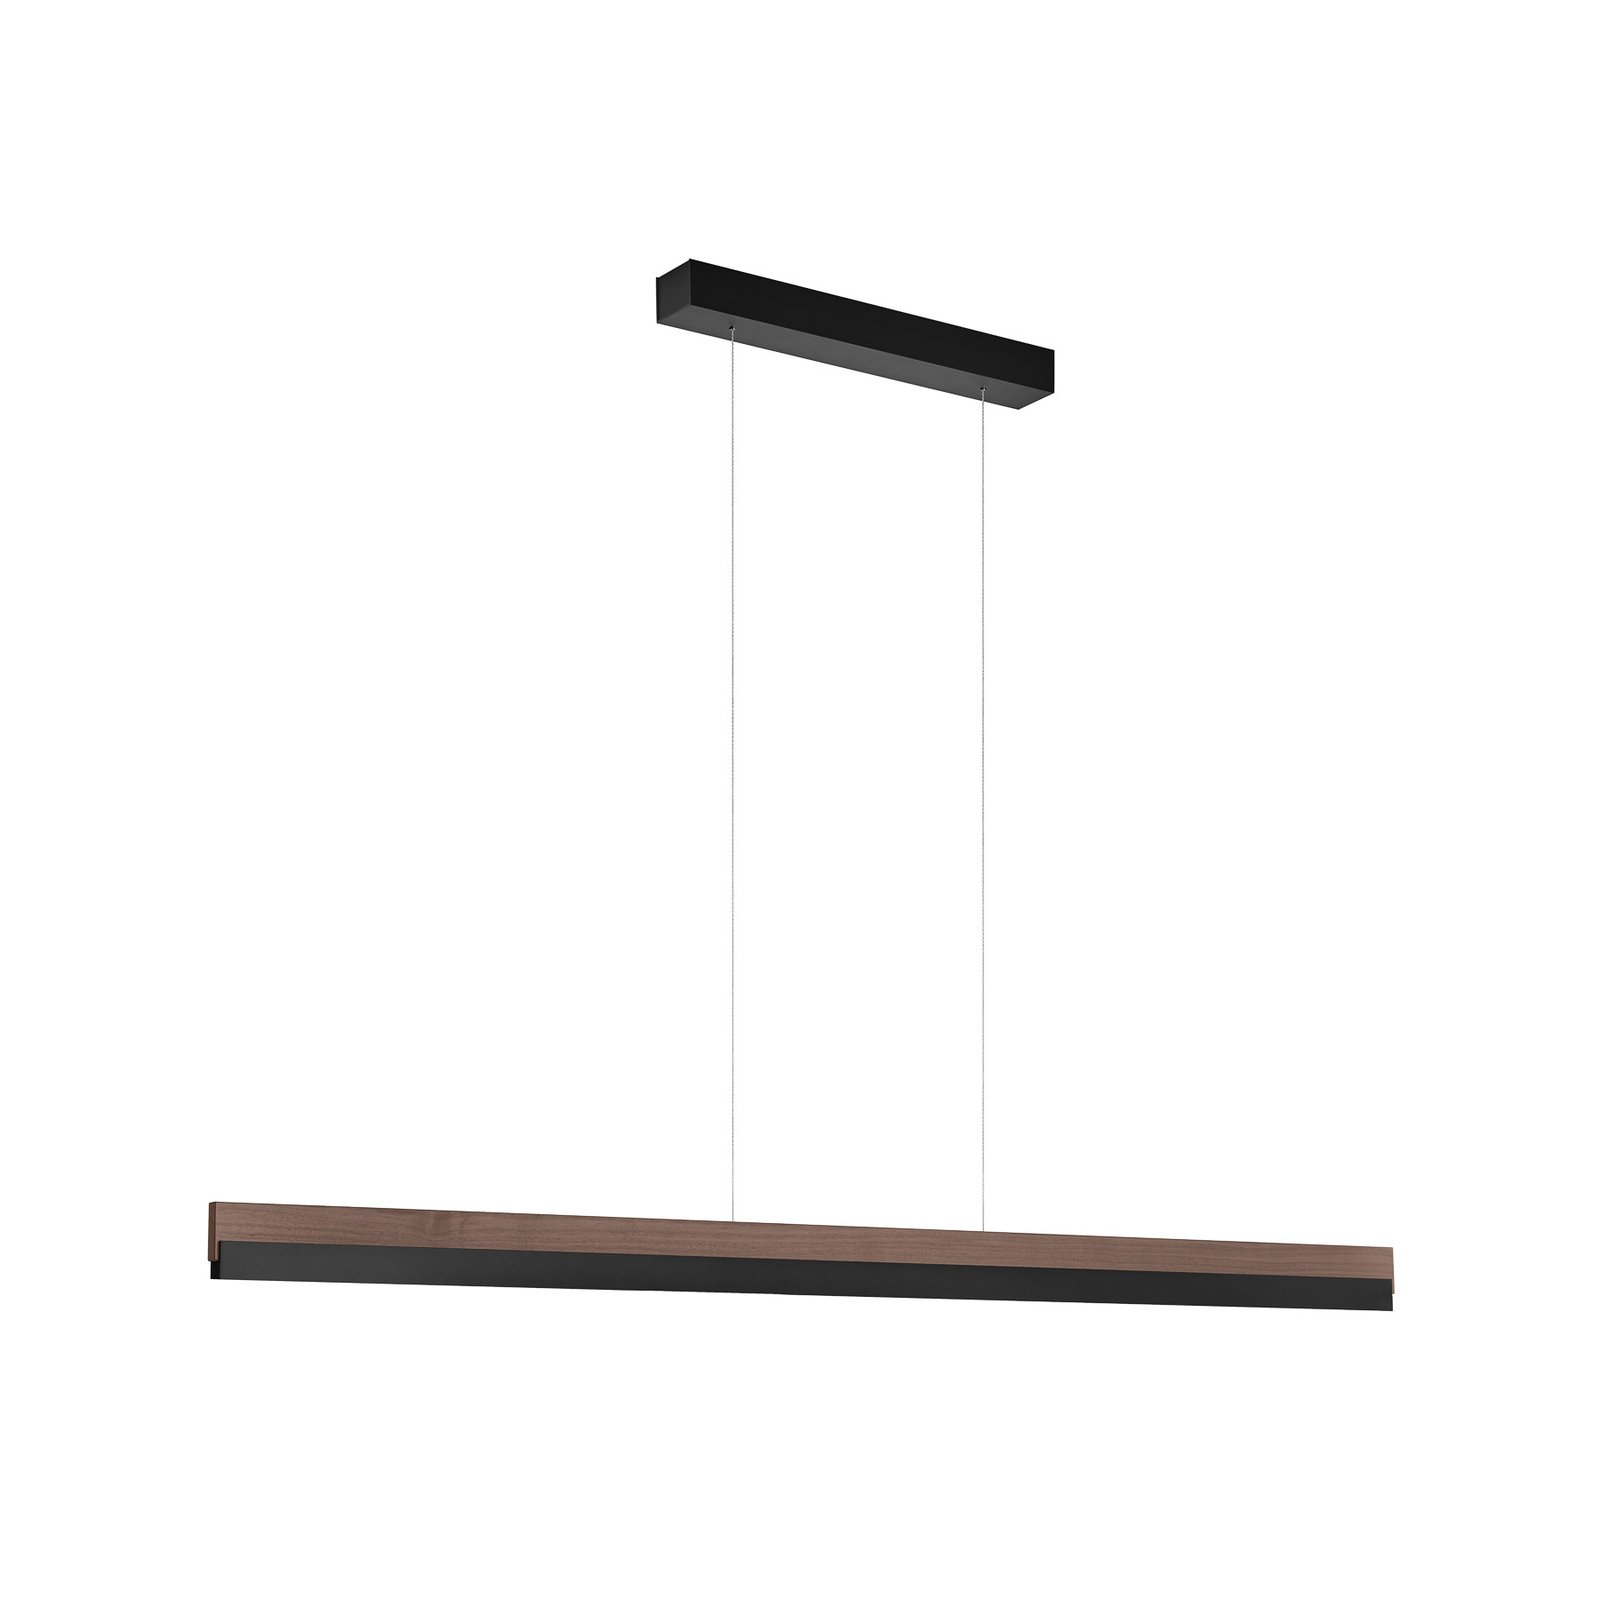 Quitani hanglamp Keijo, zwart/noot, lengte 143 cm